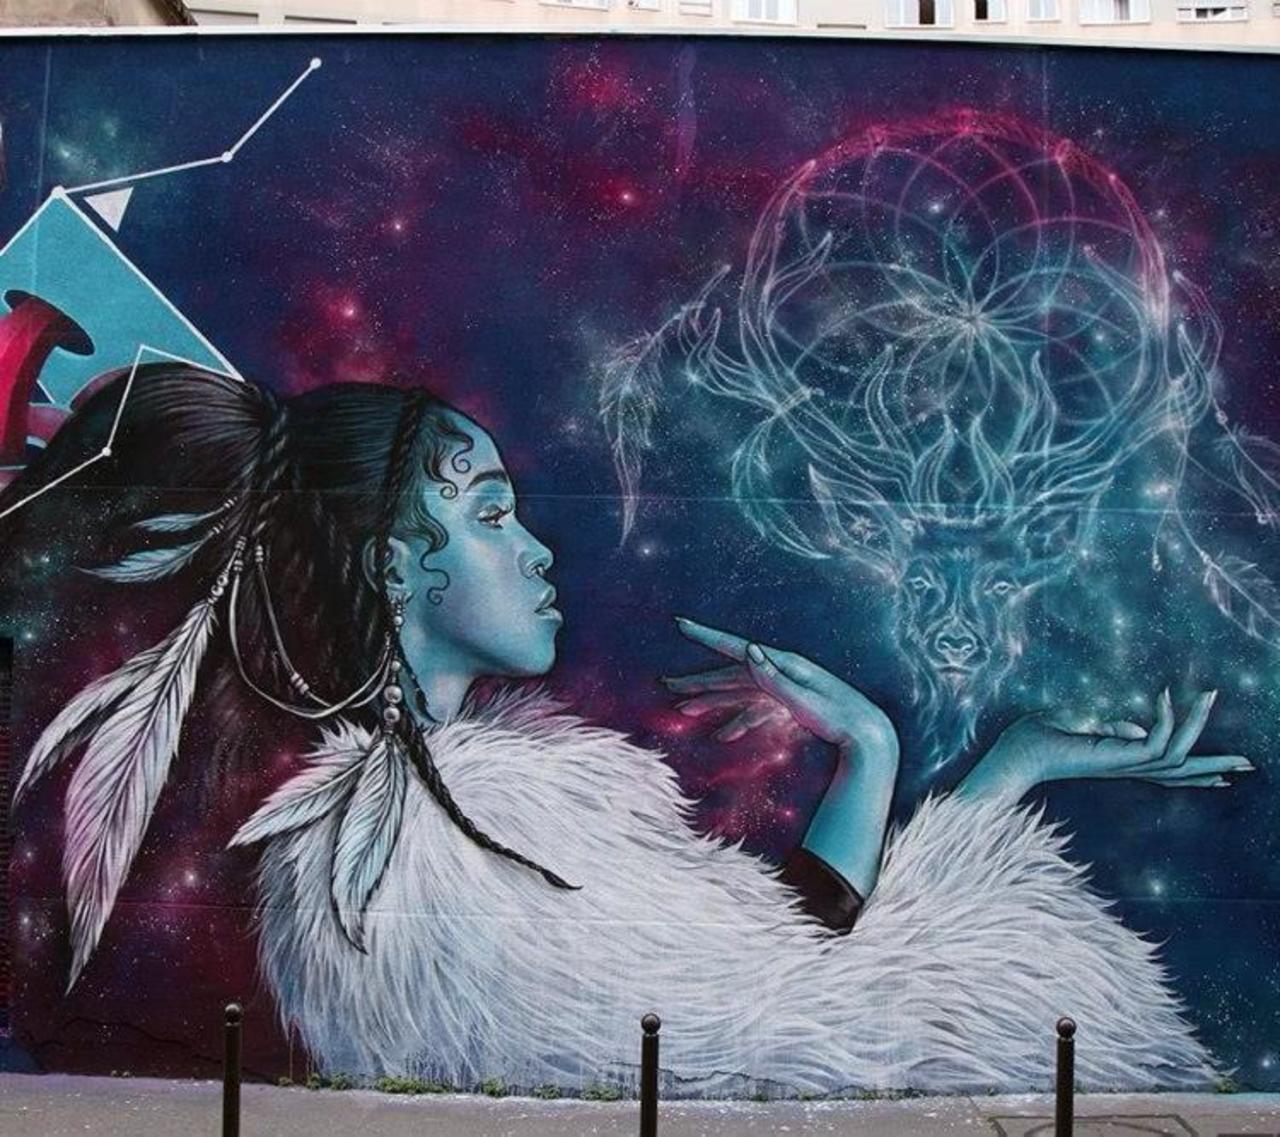 Artist Alex new Street Art mural located in Paris, France #art #mural #graffiti #streetart http://t.co/uZQm9DKrl1 https://goo.gl/7kifqw